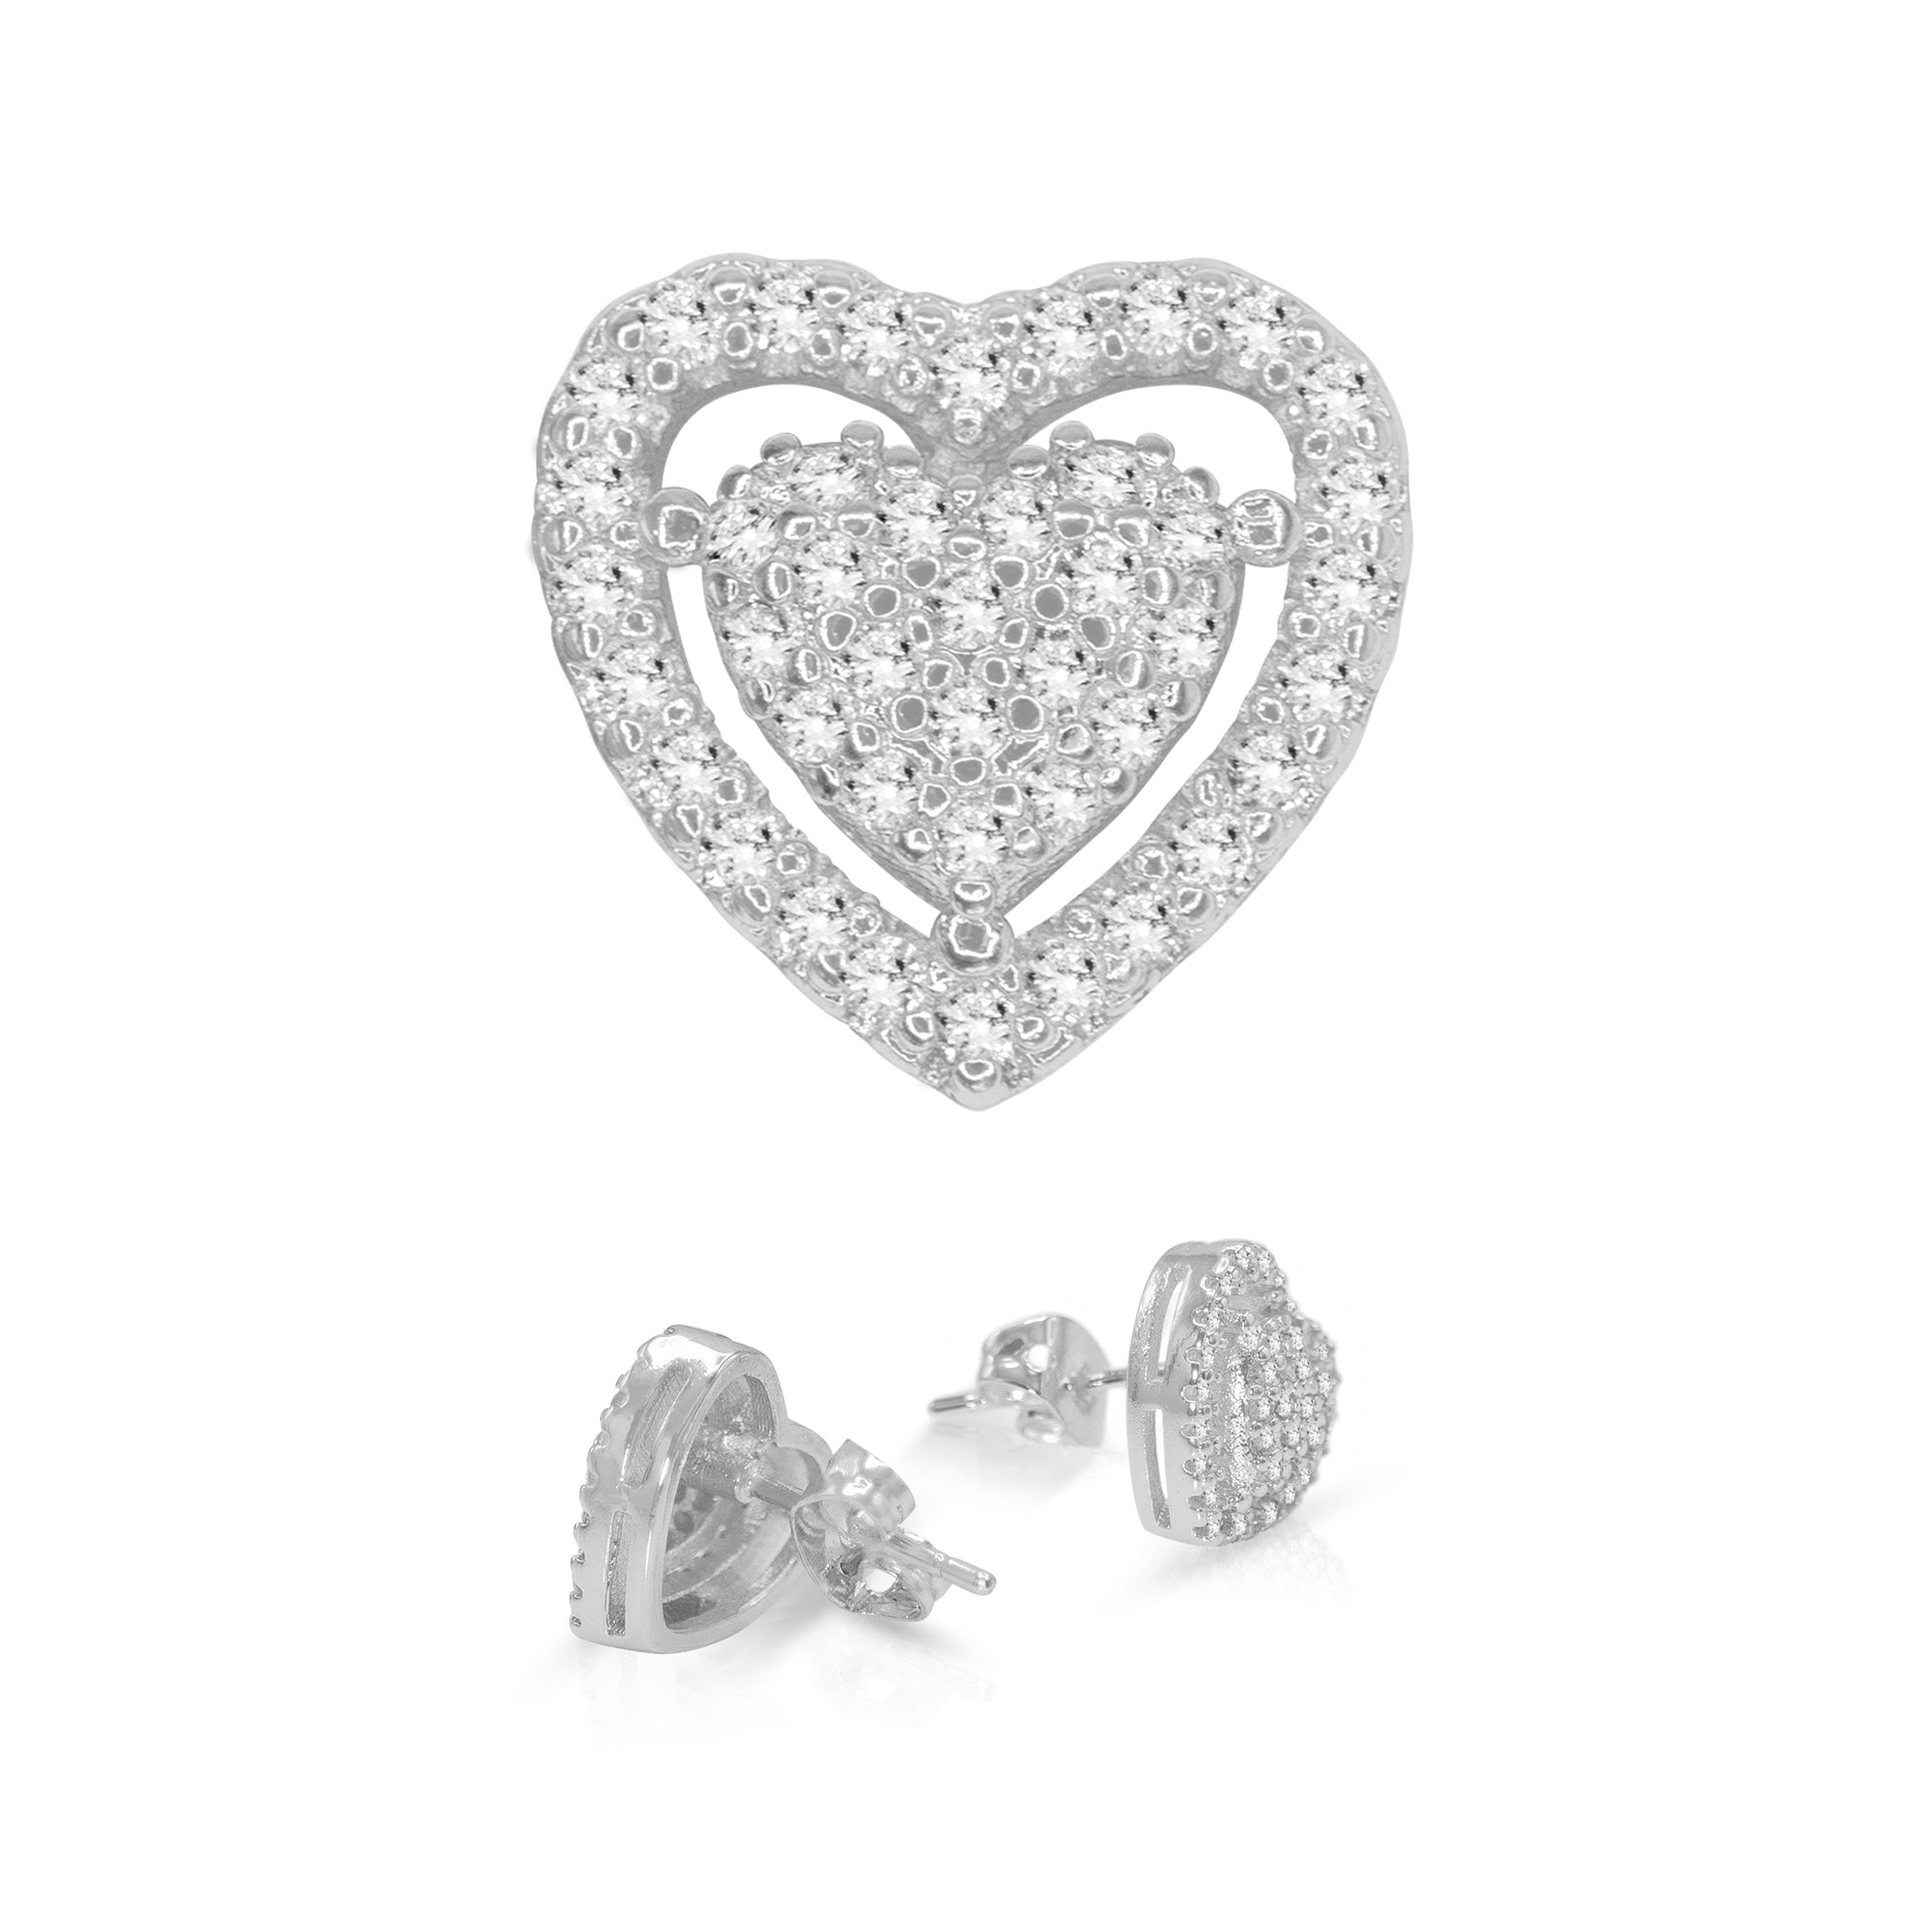 Heart 2 Cubic Zirconia Earrings 14K Gold Filled Silver Hip Hop Studs Jewelry Women